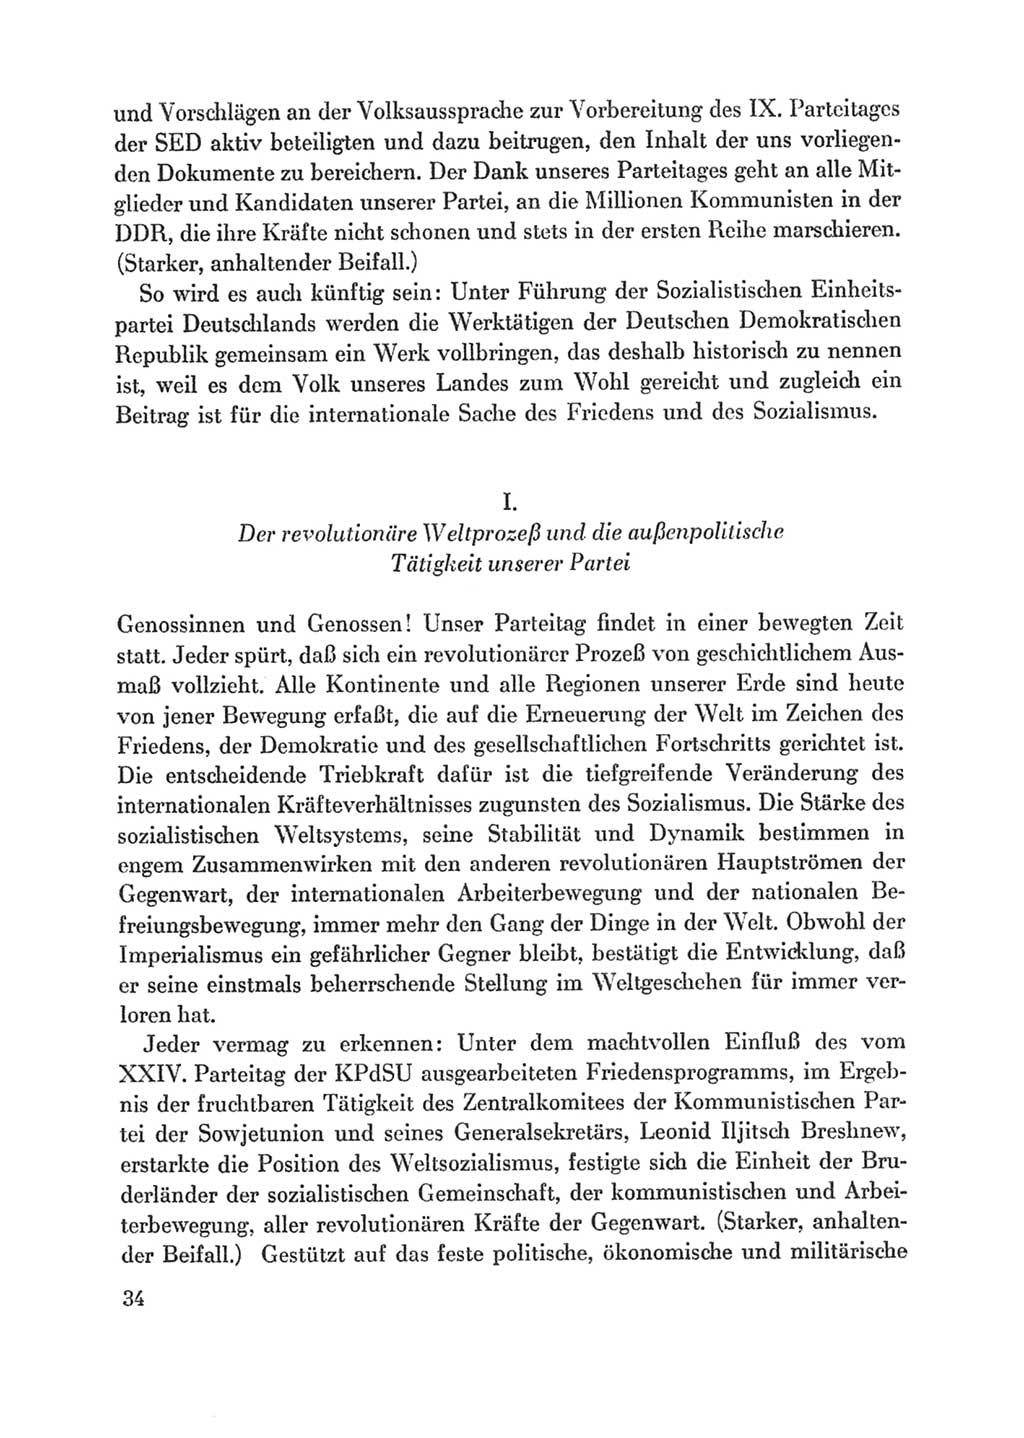 Protokoll der Verhandlungen des Ⅸ. Parteitages der Sozialistischen Einheitspartei Deutschlands (SED) [Deutsche Demokratische Republik (DDR)] 1976, Band 1, Seite 34 (Prot. Verh. Ⅸ. PT SED DDR 1976, Bd. 1, S. 34)